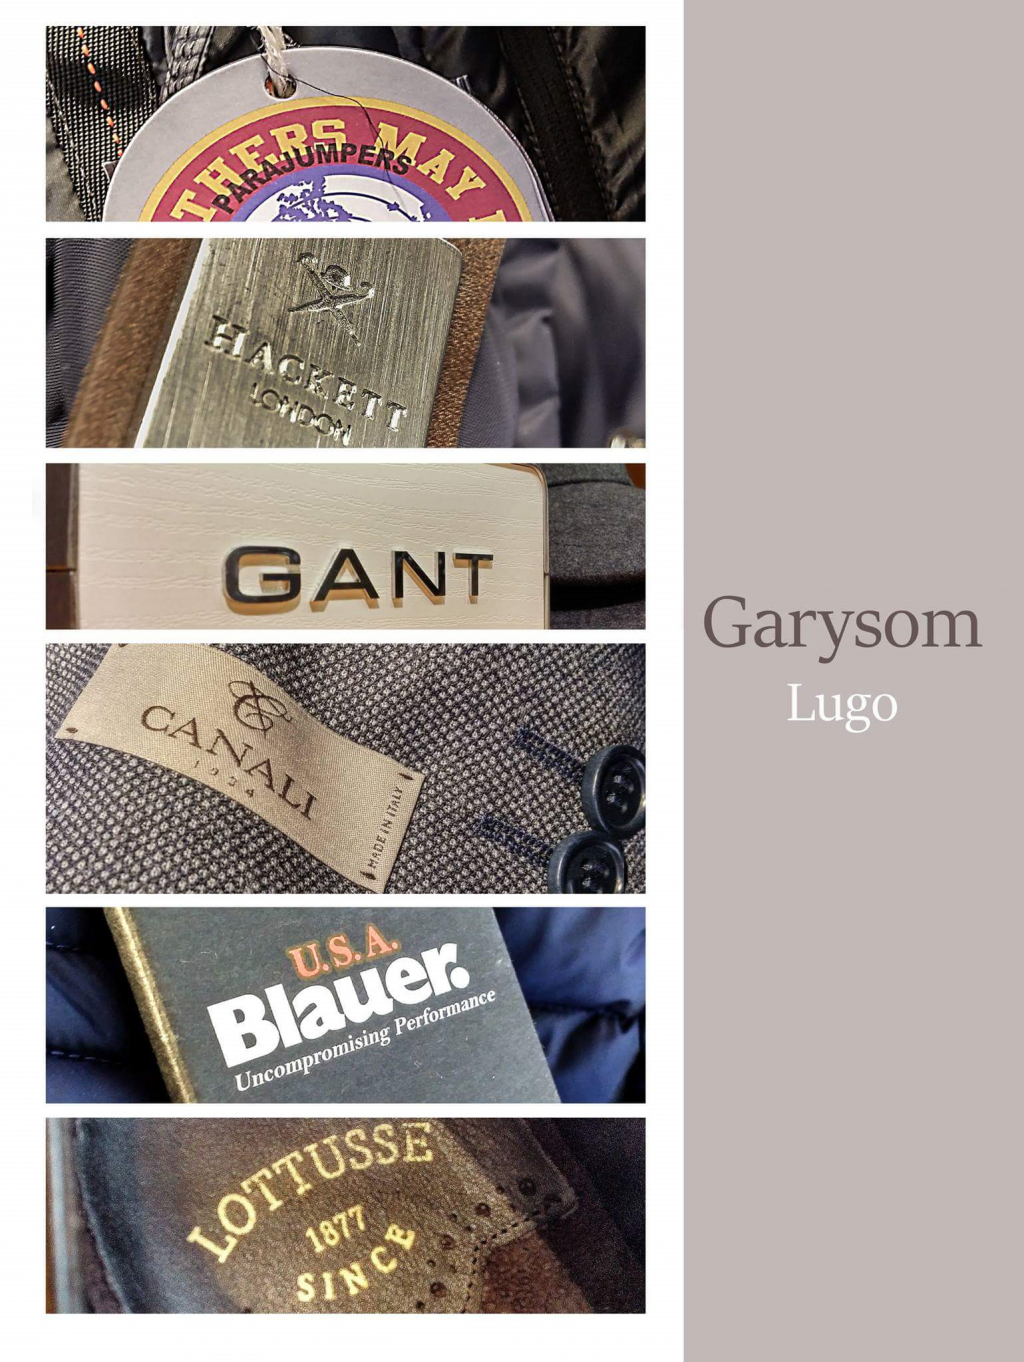 Garysom marcas reconocidas